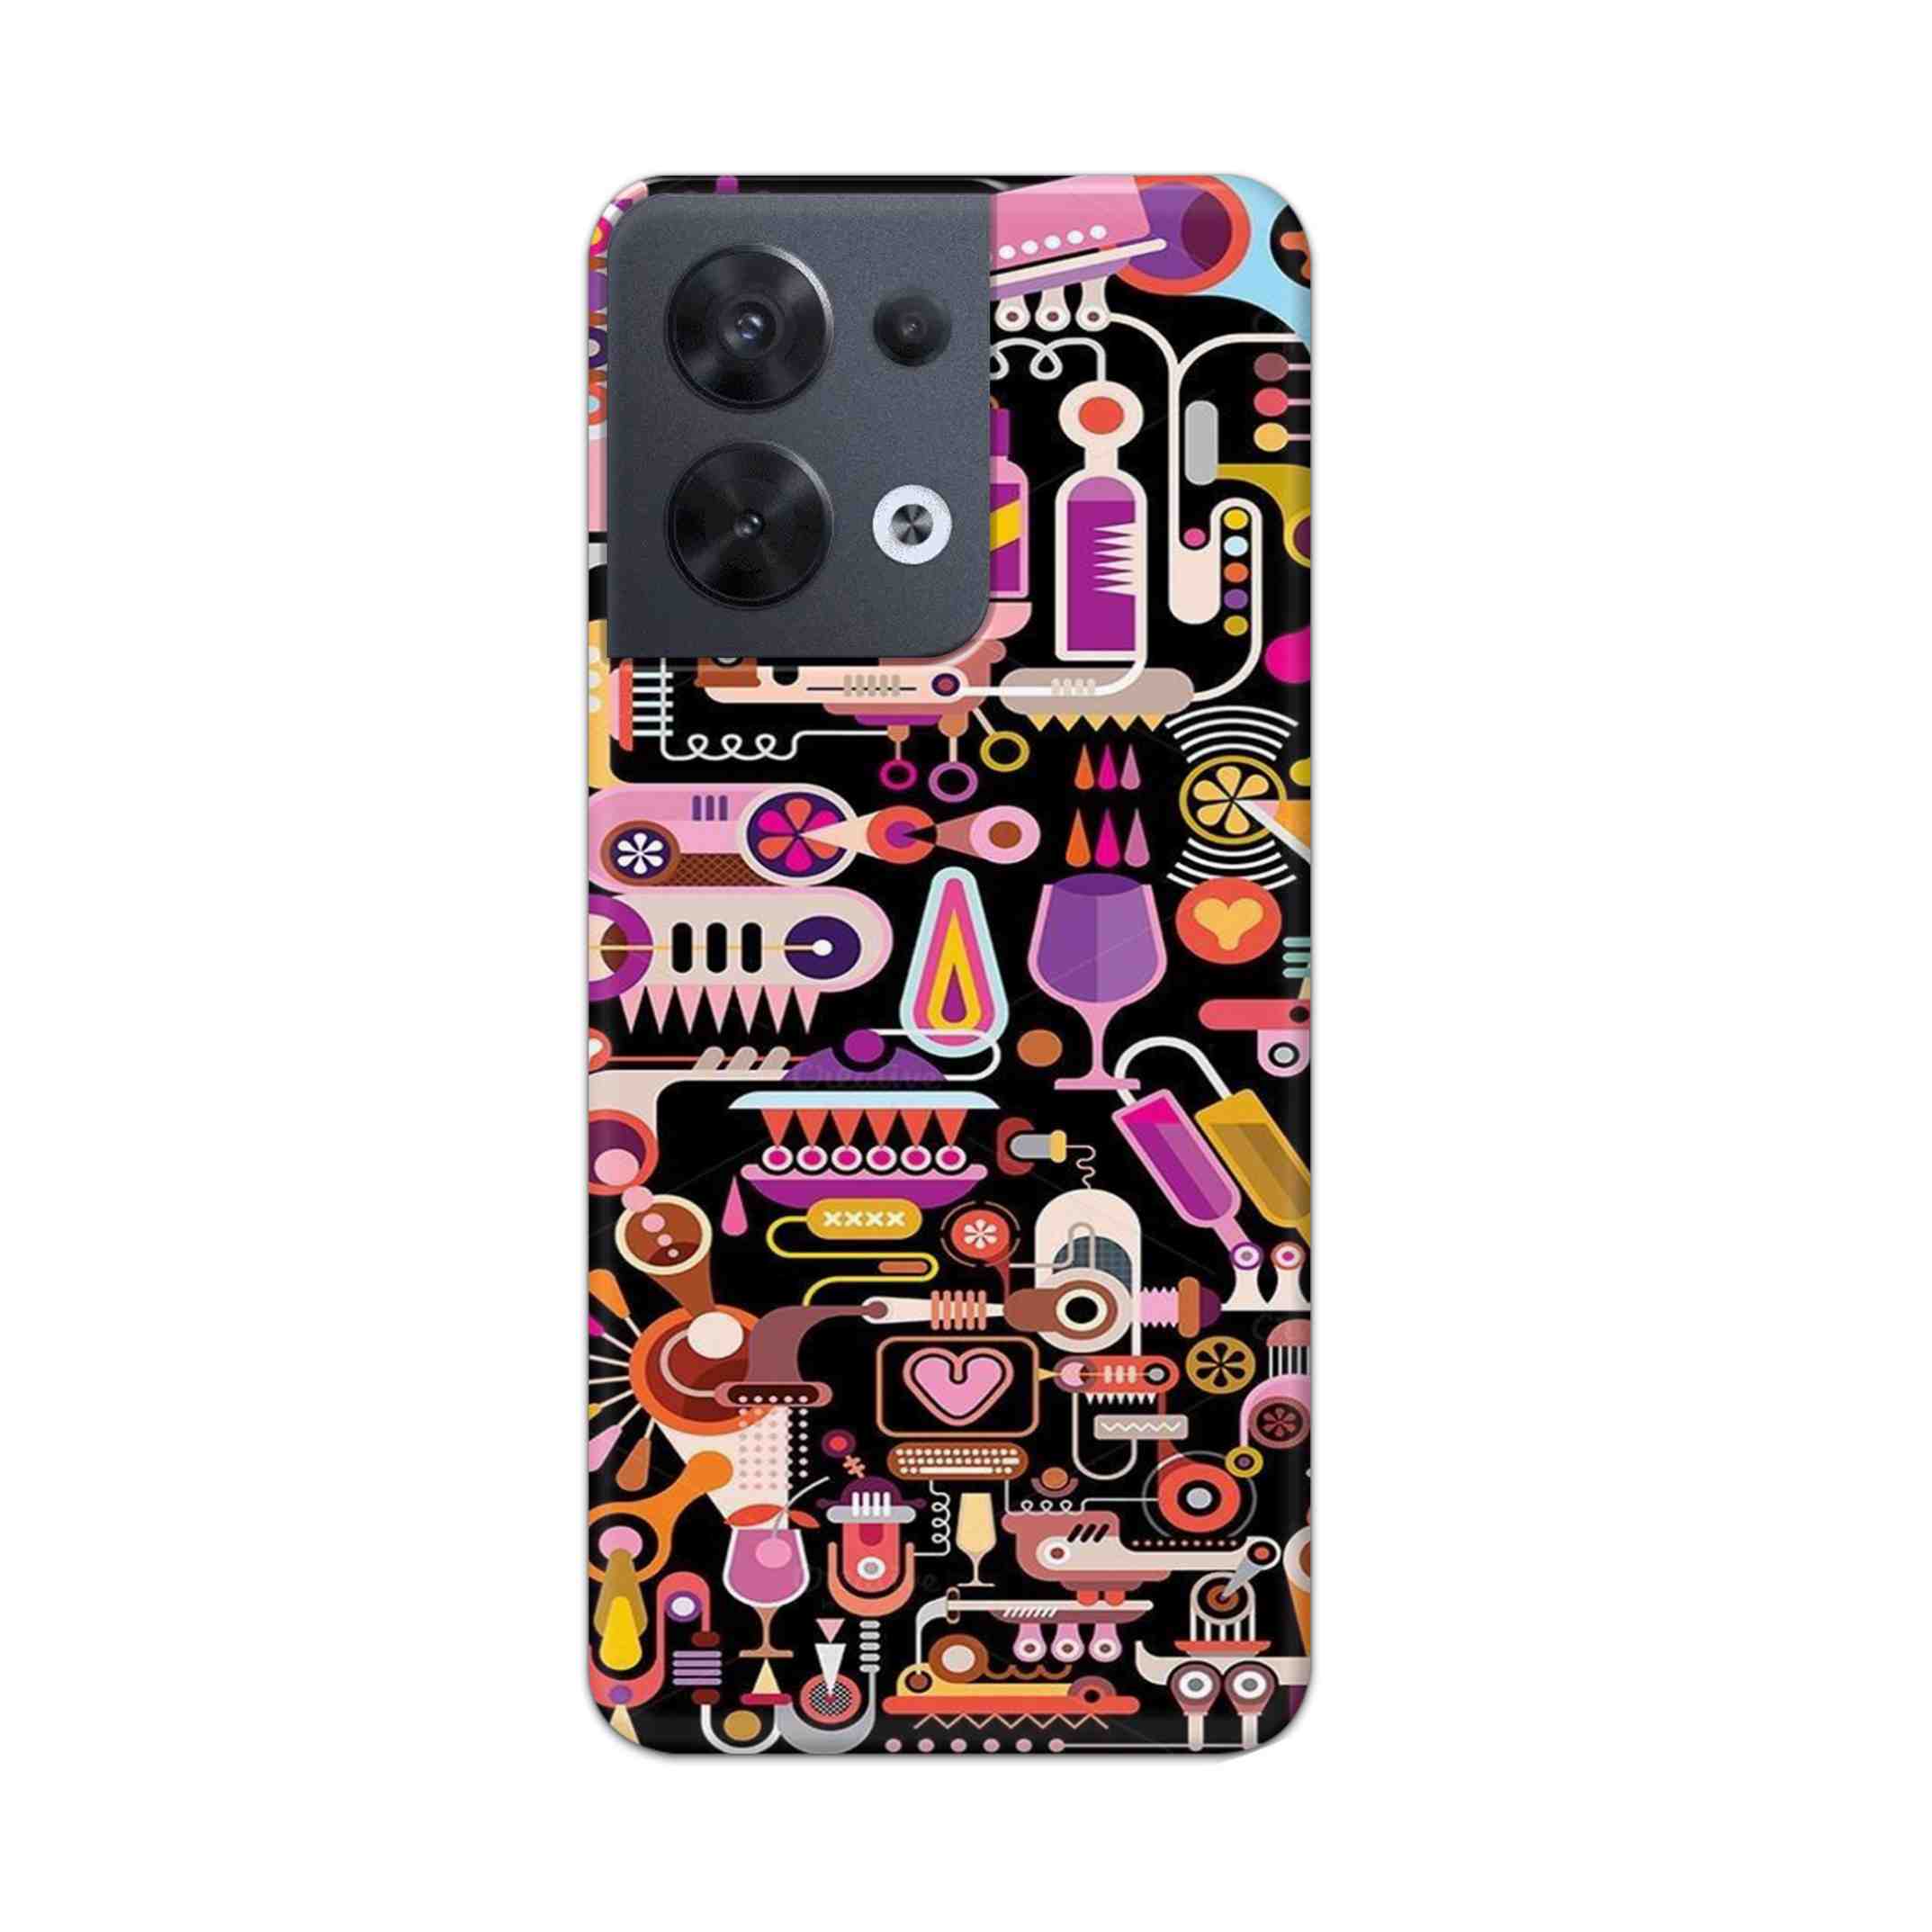 Buy Art Hard Back Mobile Phone Case/Cover For Oppo Reno 8 5G Online